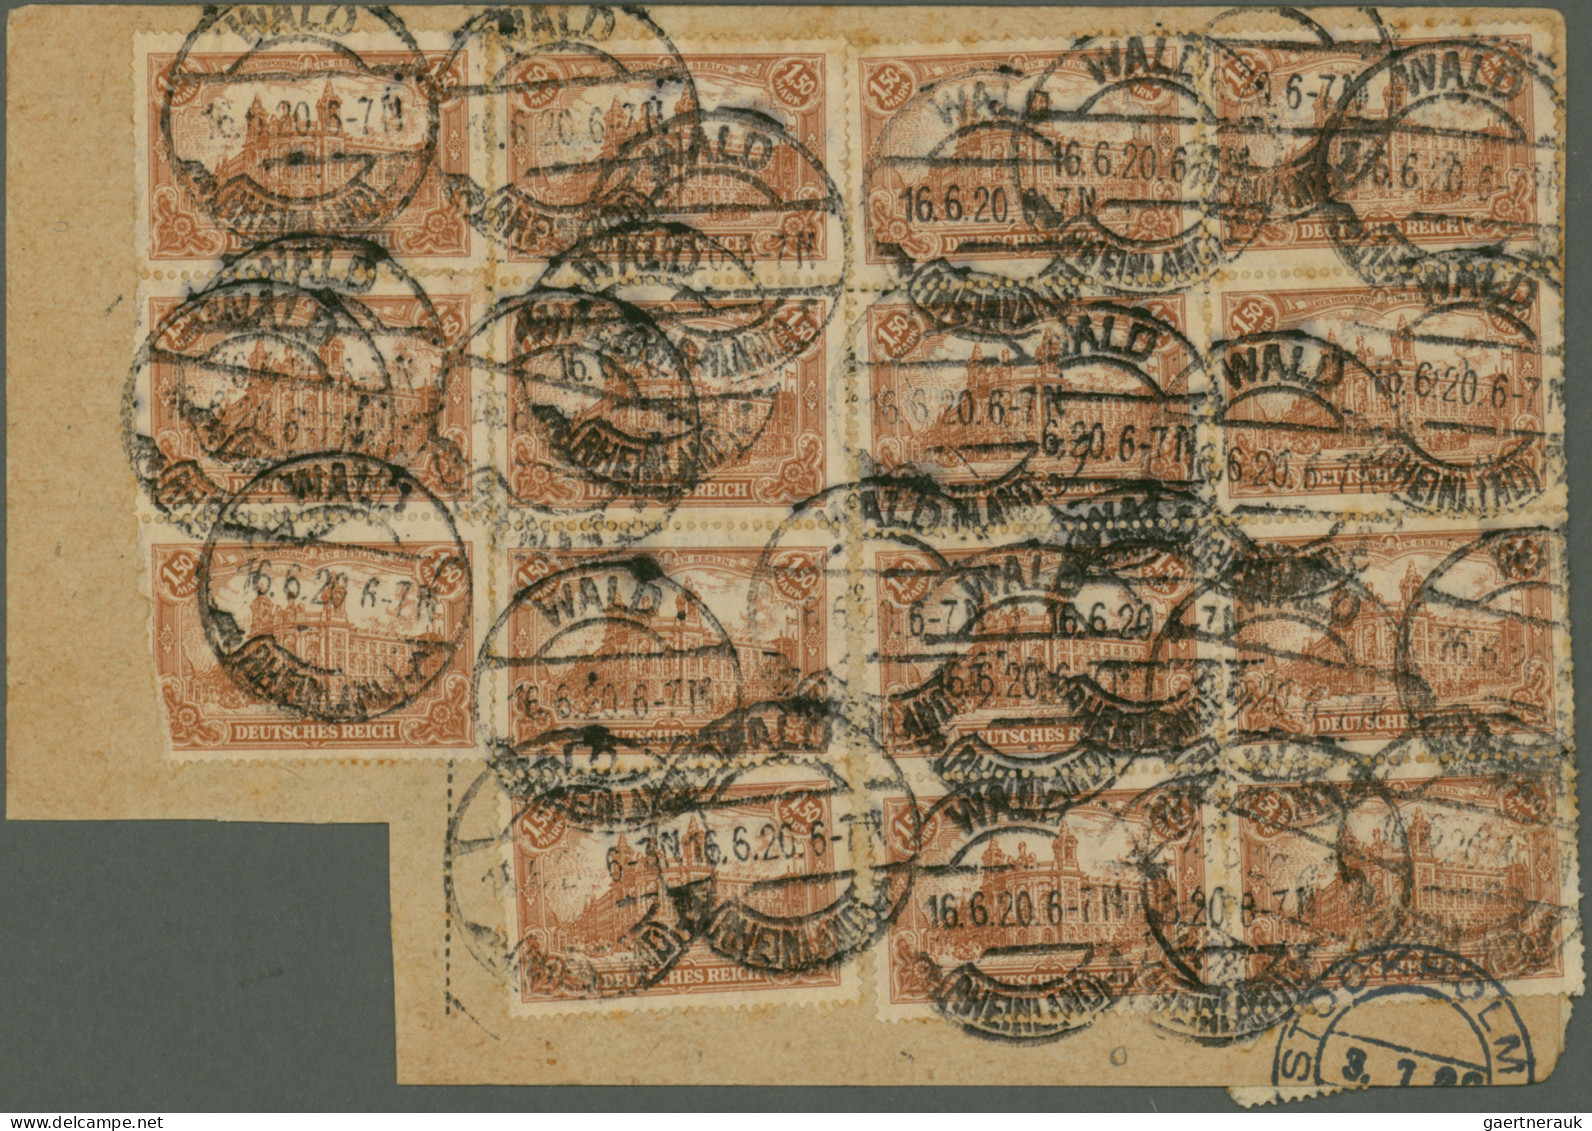 Deutsches Reich - Inflation: 1920/1923, vielseitige Partie von ca. 150 Briefen u